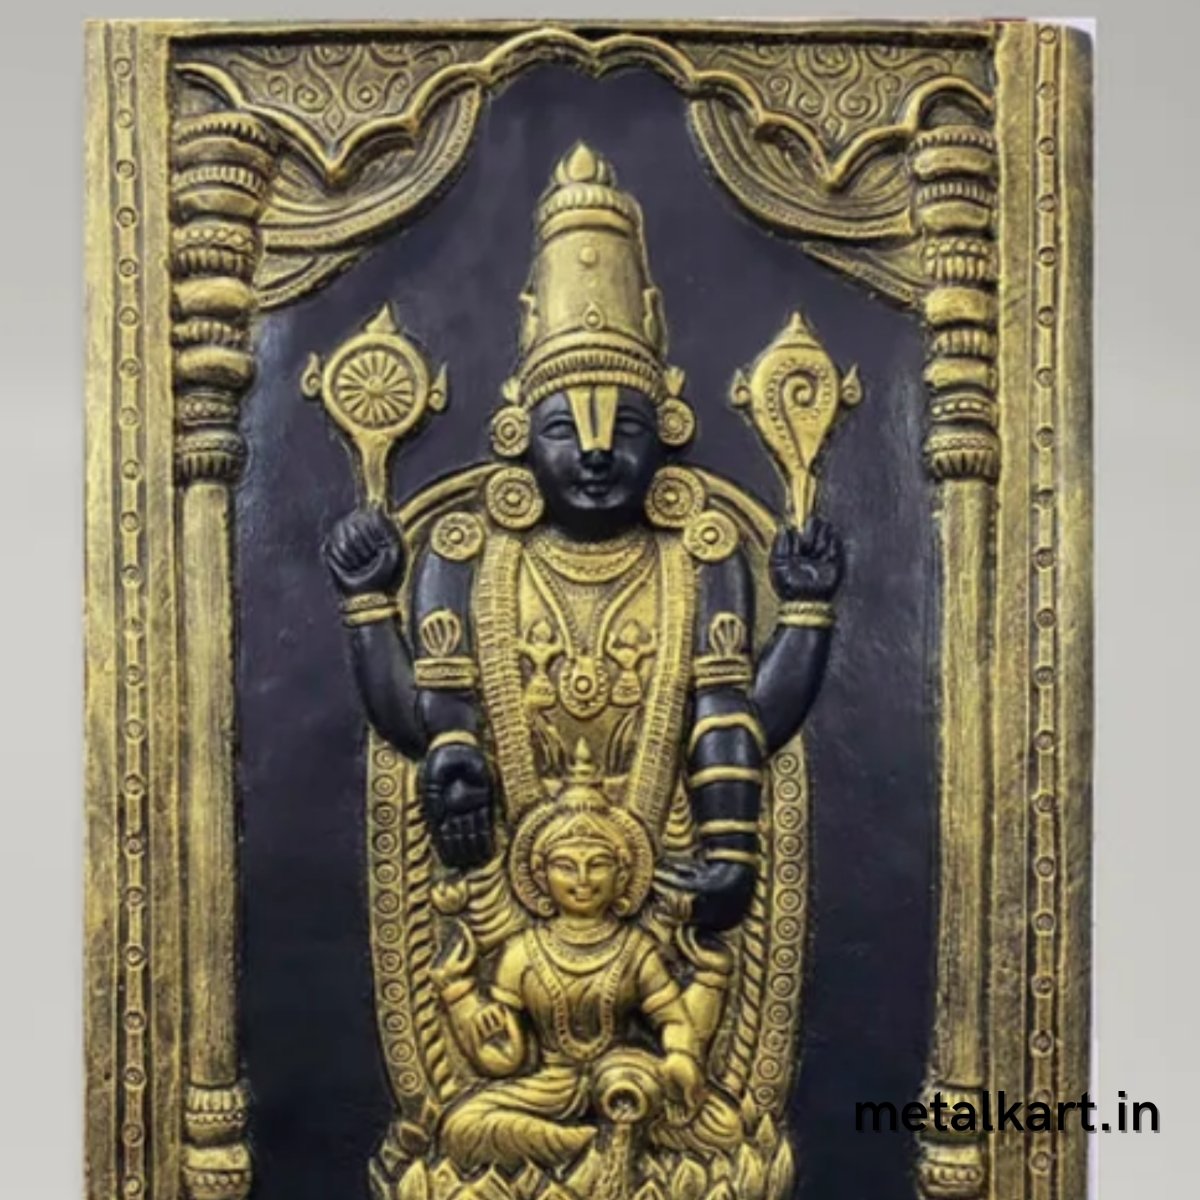 Sri Tirupati Balaji with Lakshmi Mata 3D Wall Sculpture (36 x 24 Inches)